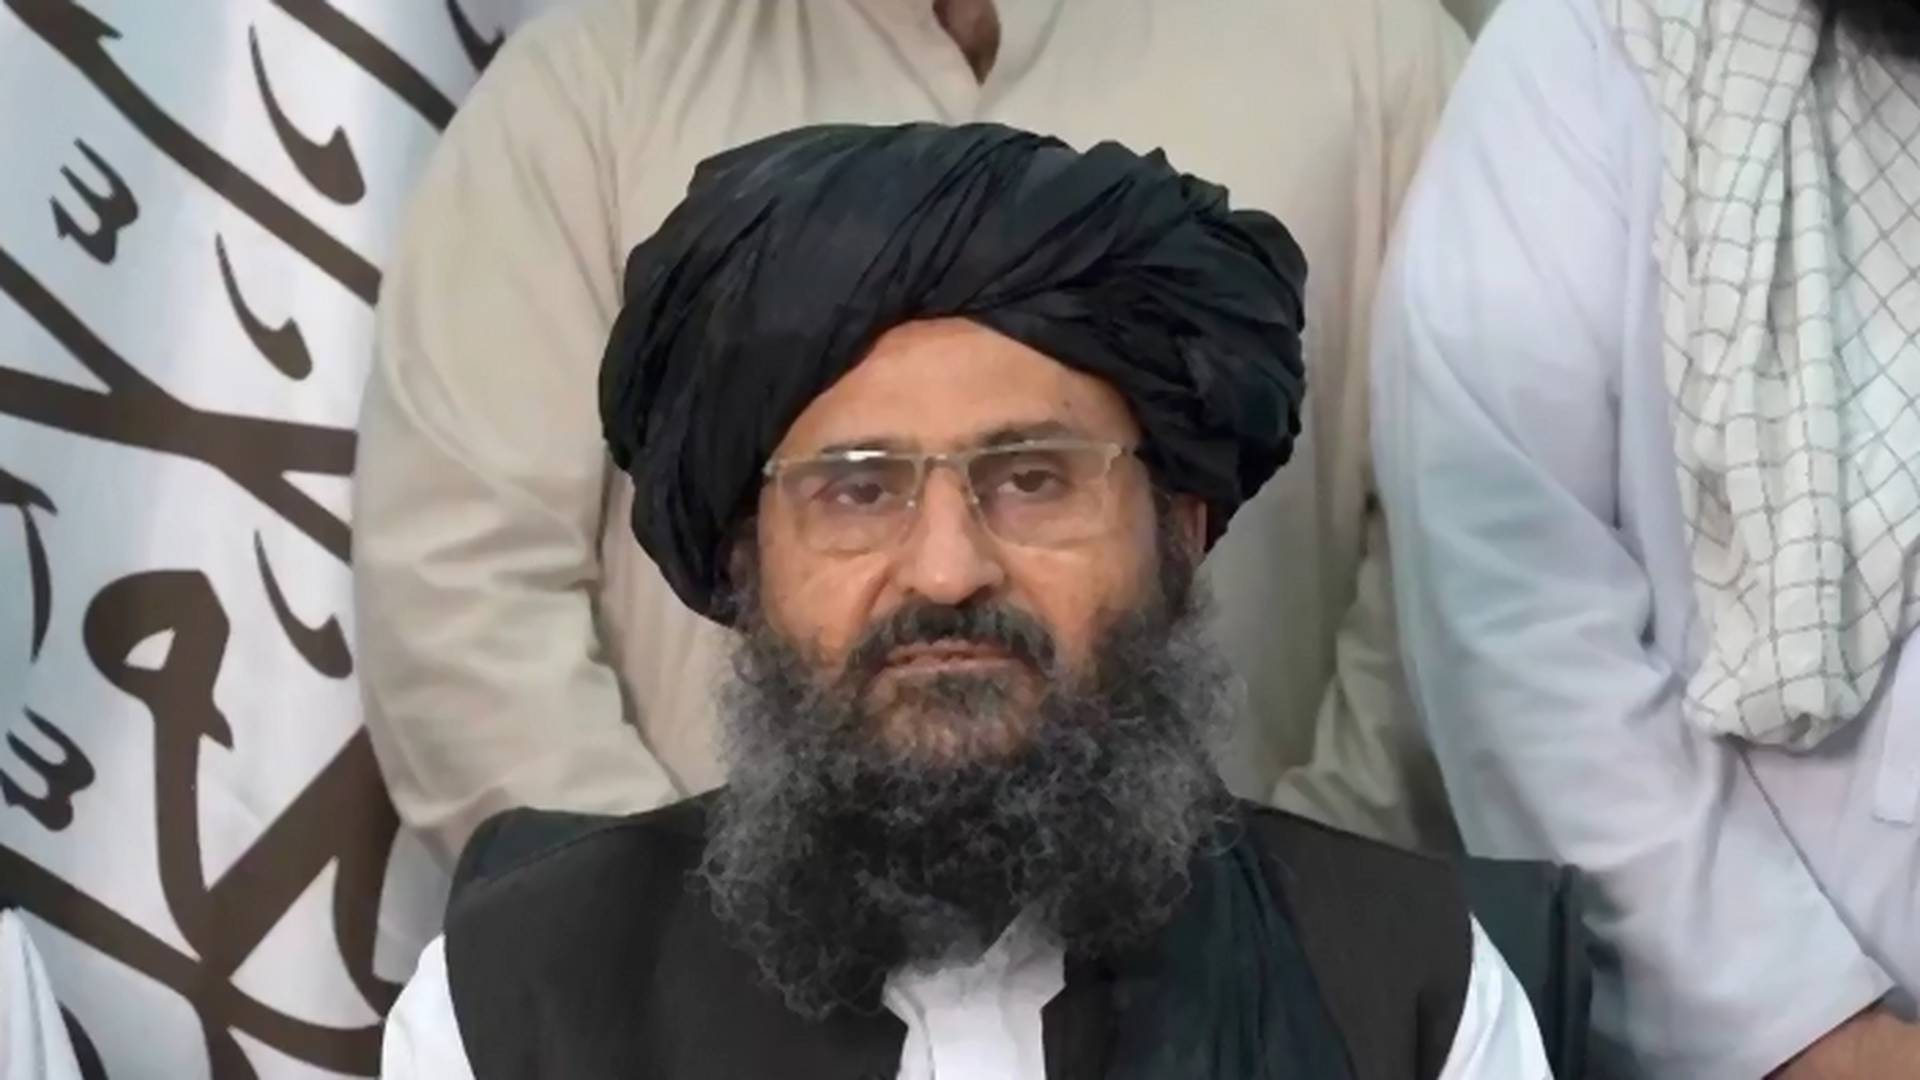 Ovo je taliban kog je Tramp pustio iz zatvora da pregovara o miru, a sada ima svu vlast u Avganistanu